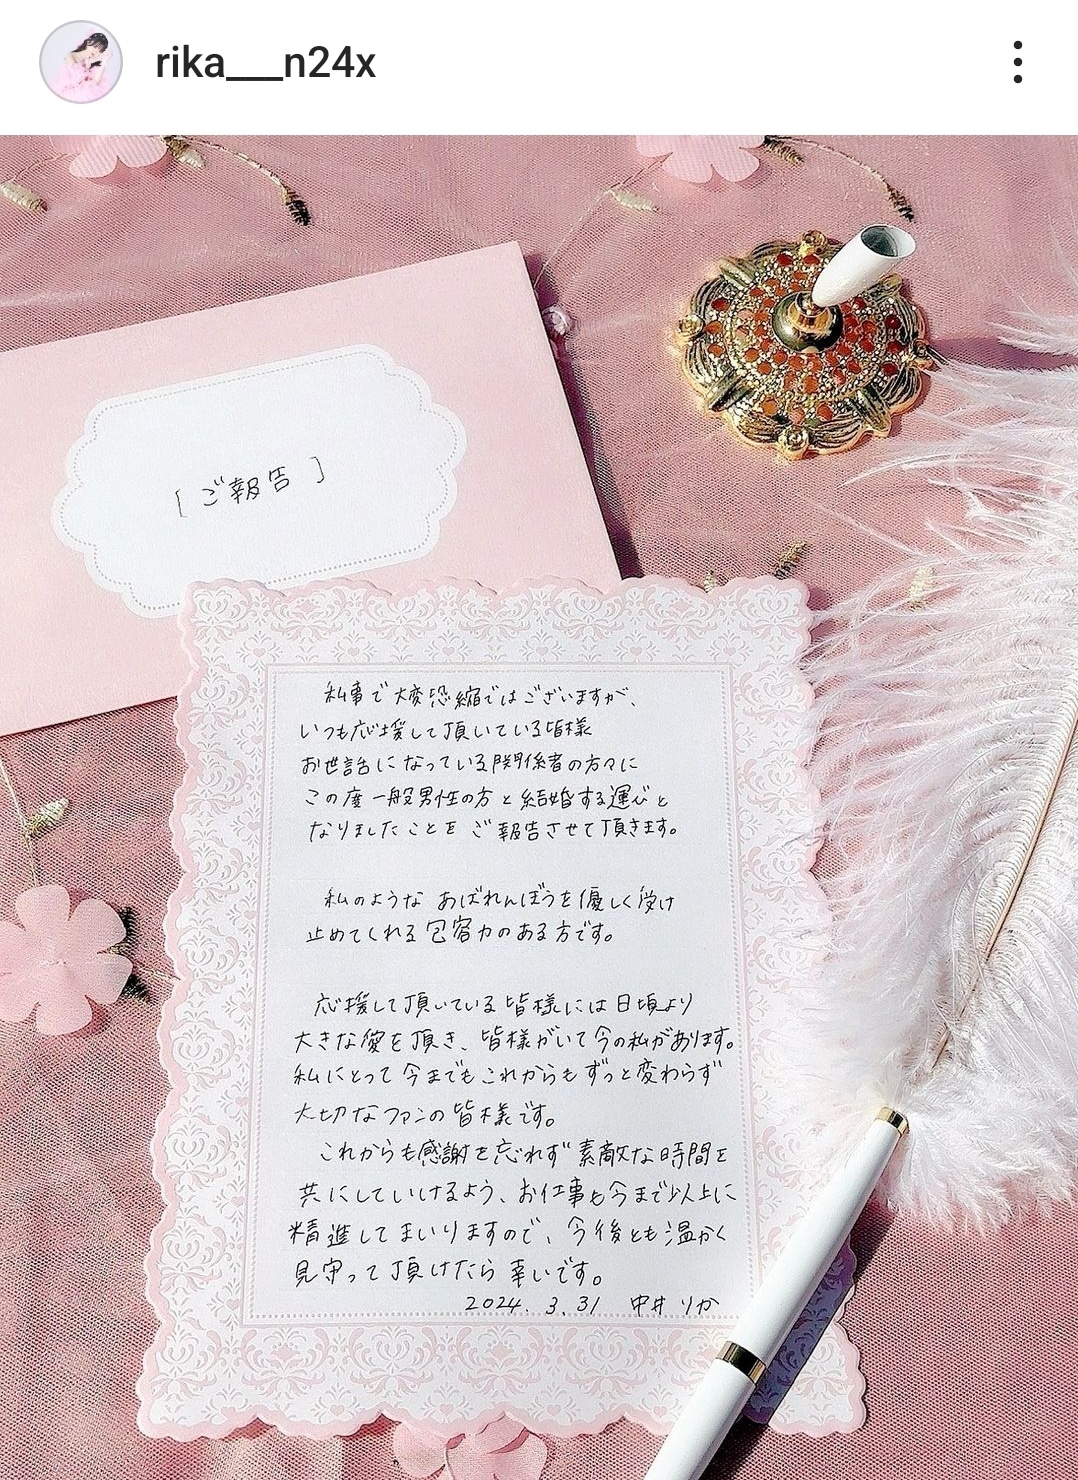 Бывшая участница NGT48 Накаи Рика объявила о свадьбе